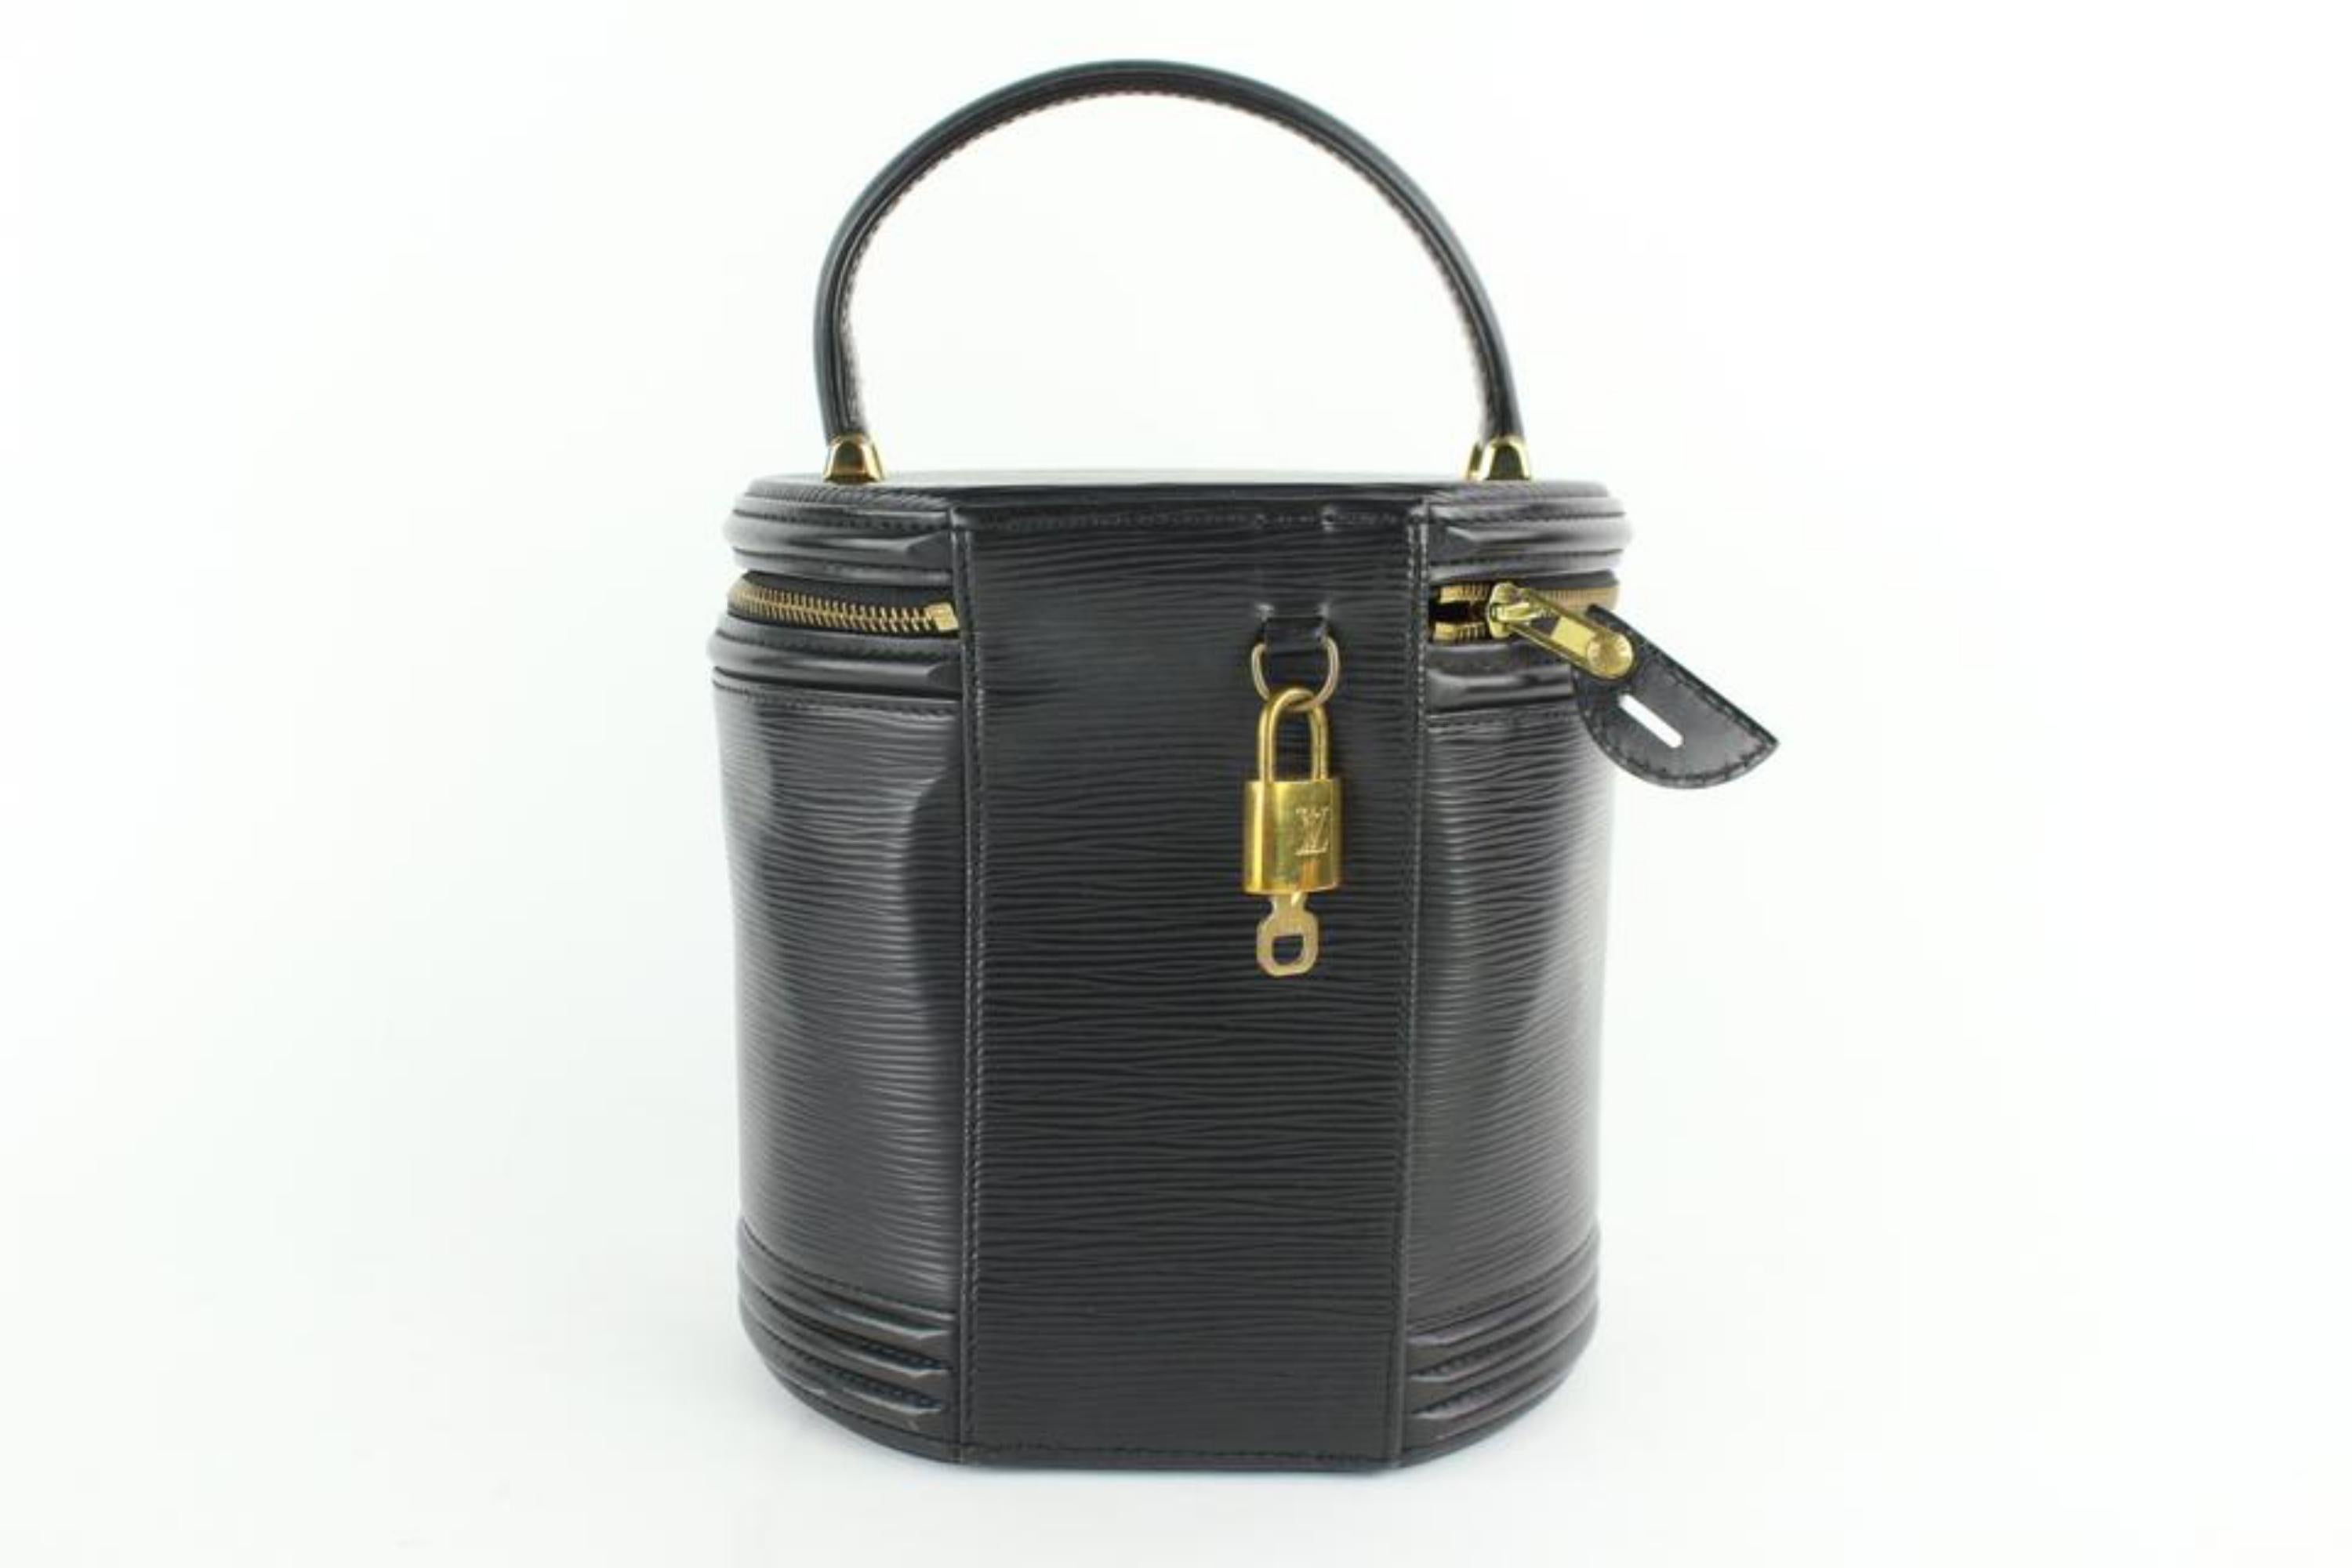 Louis Vuitton Cannes Noir Vanity Tote Case 27lz0129 Black Leather Satchel For Sale 2